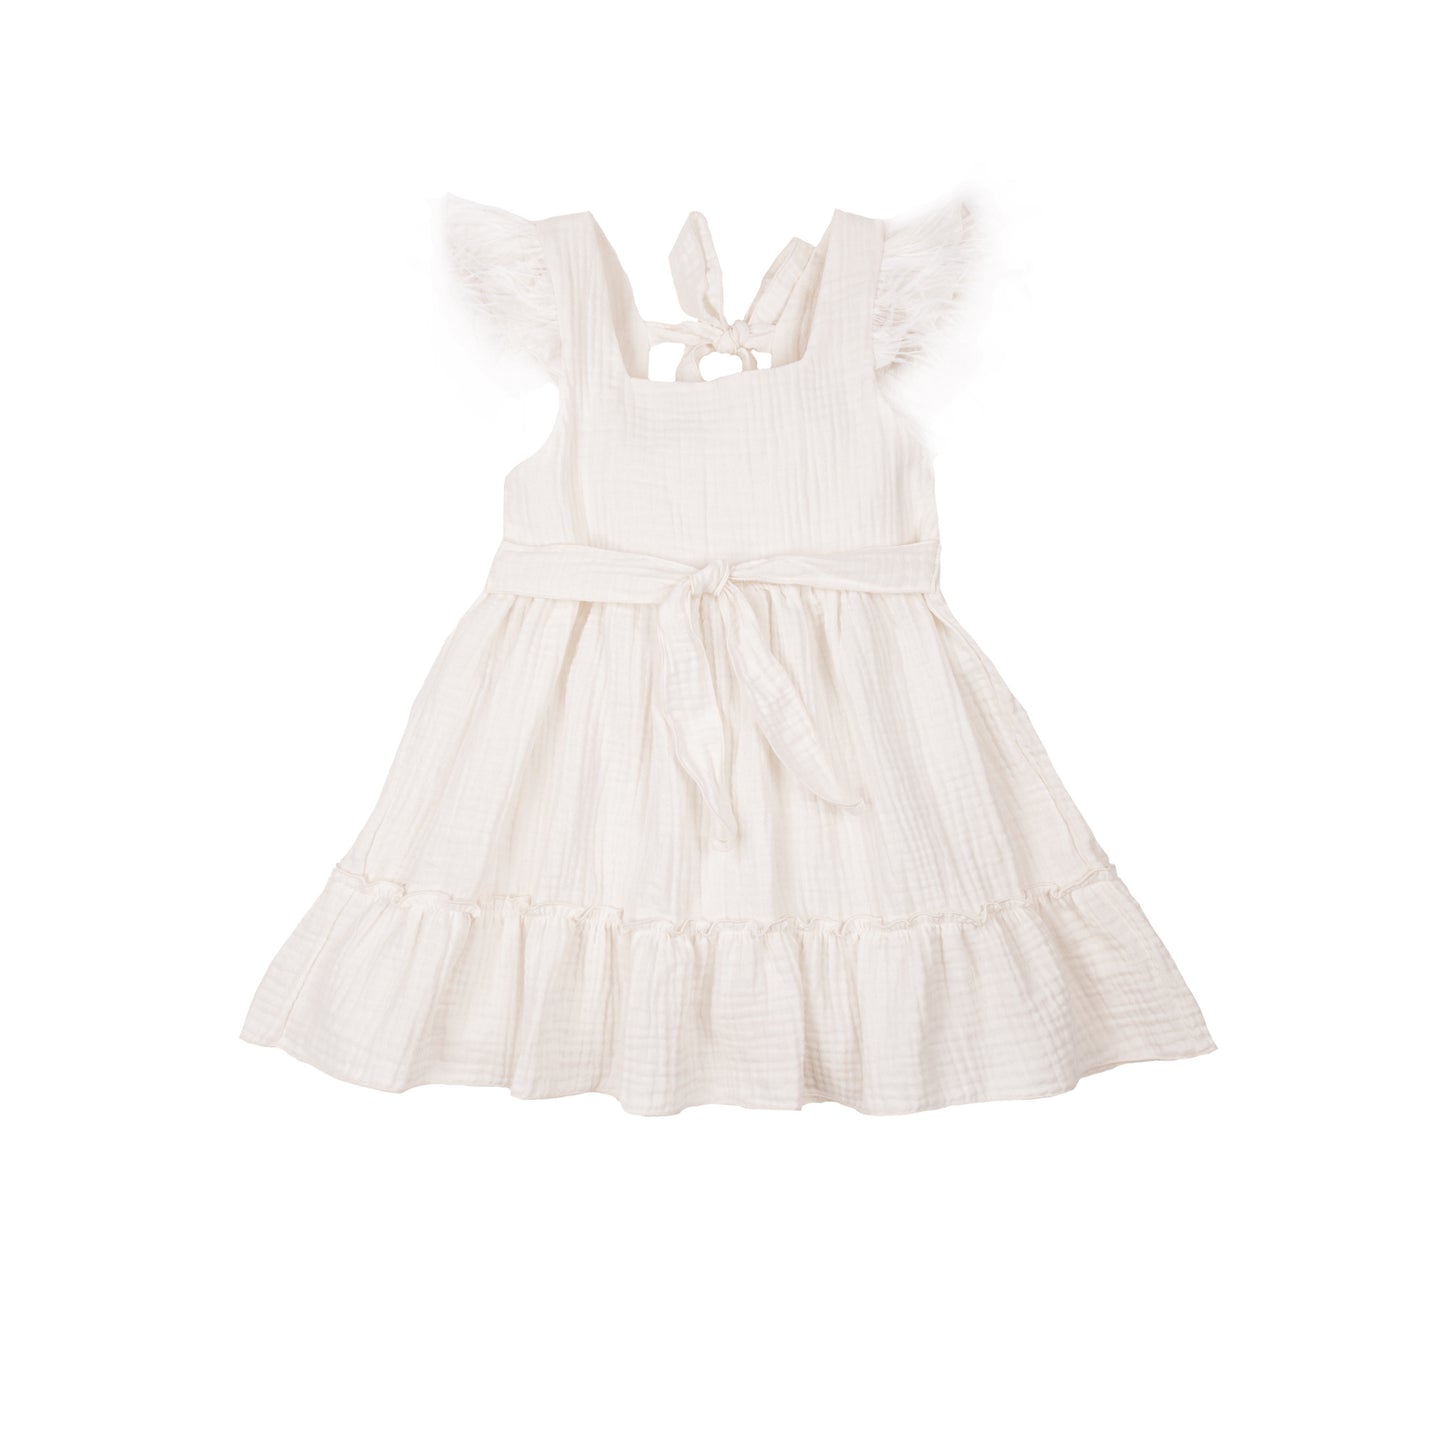 baby shops online uae by Elli Junior Babywear Trading LLC